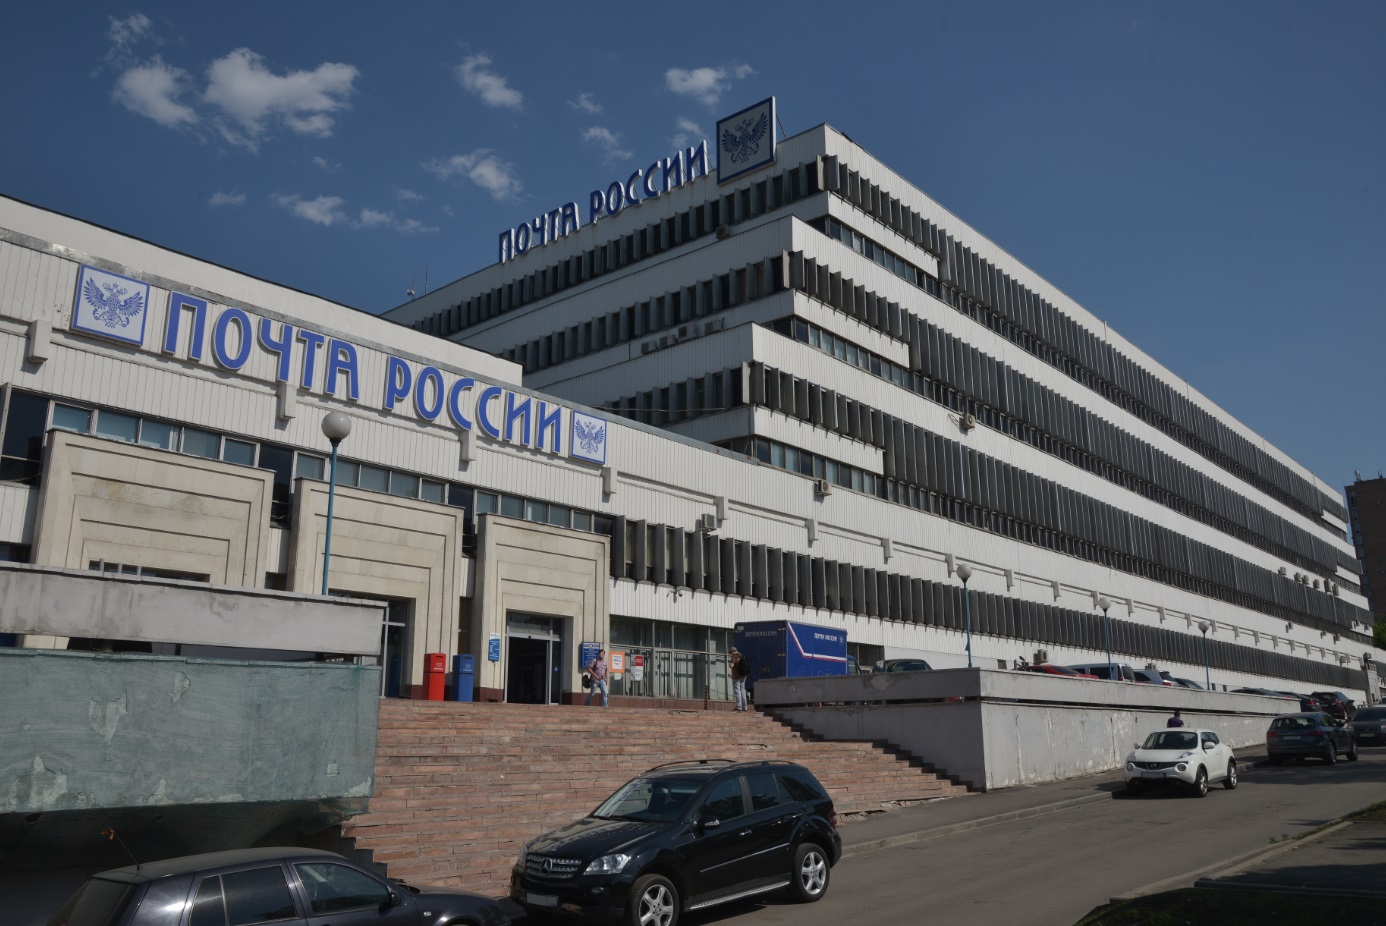 Почта россии центральный офис в москве